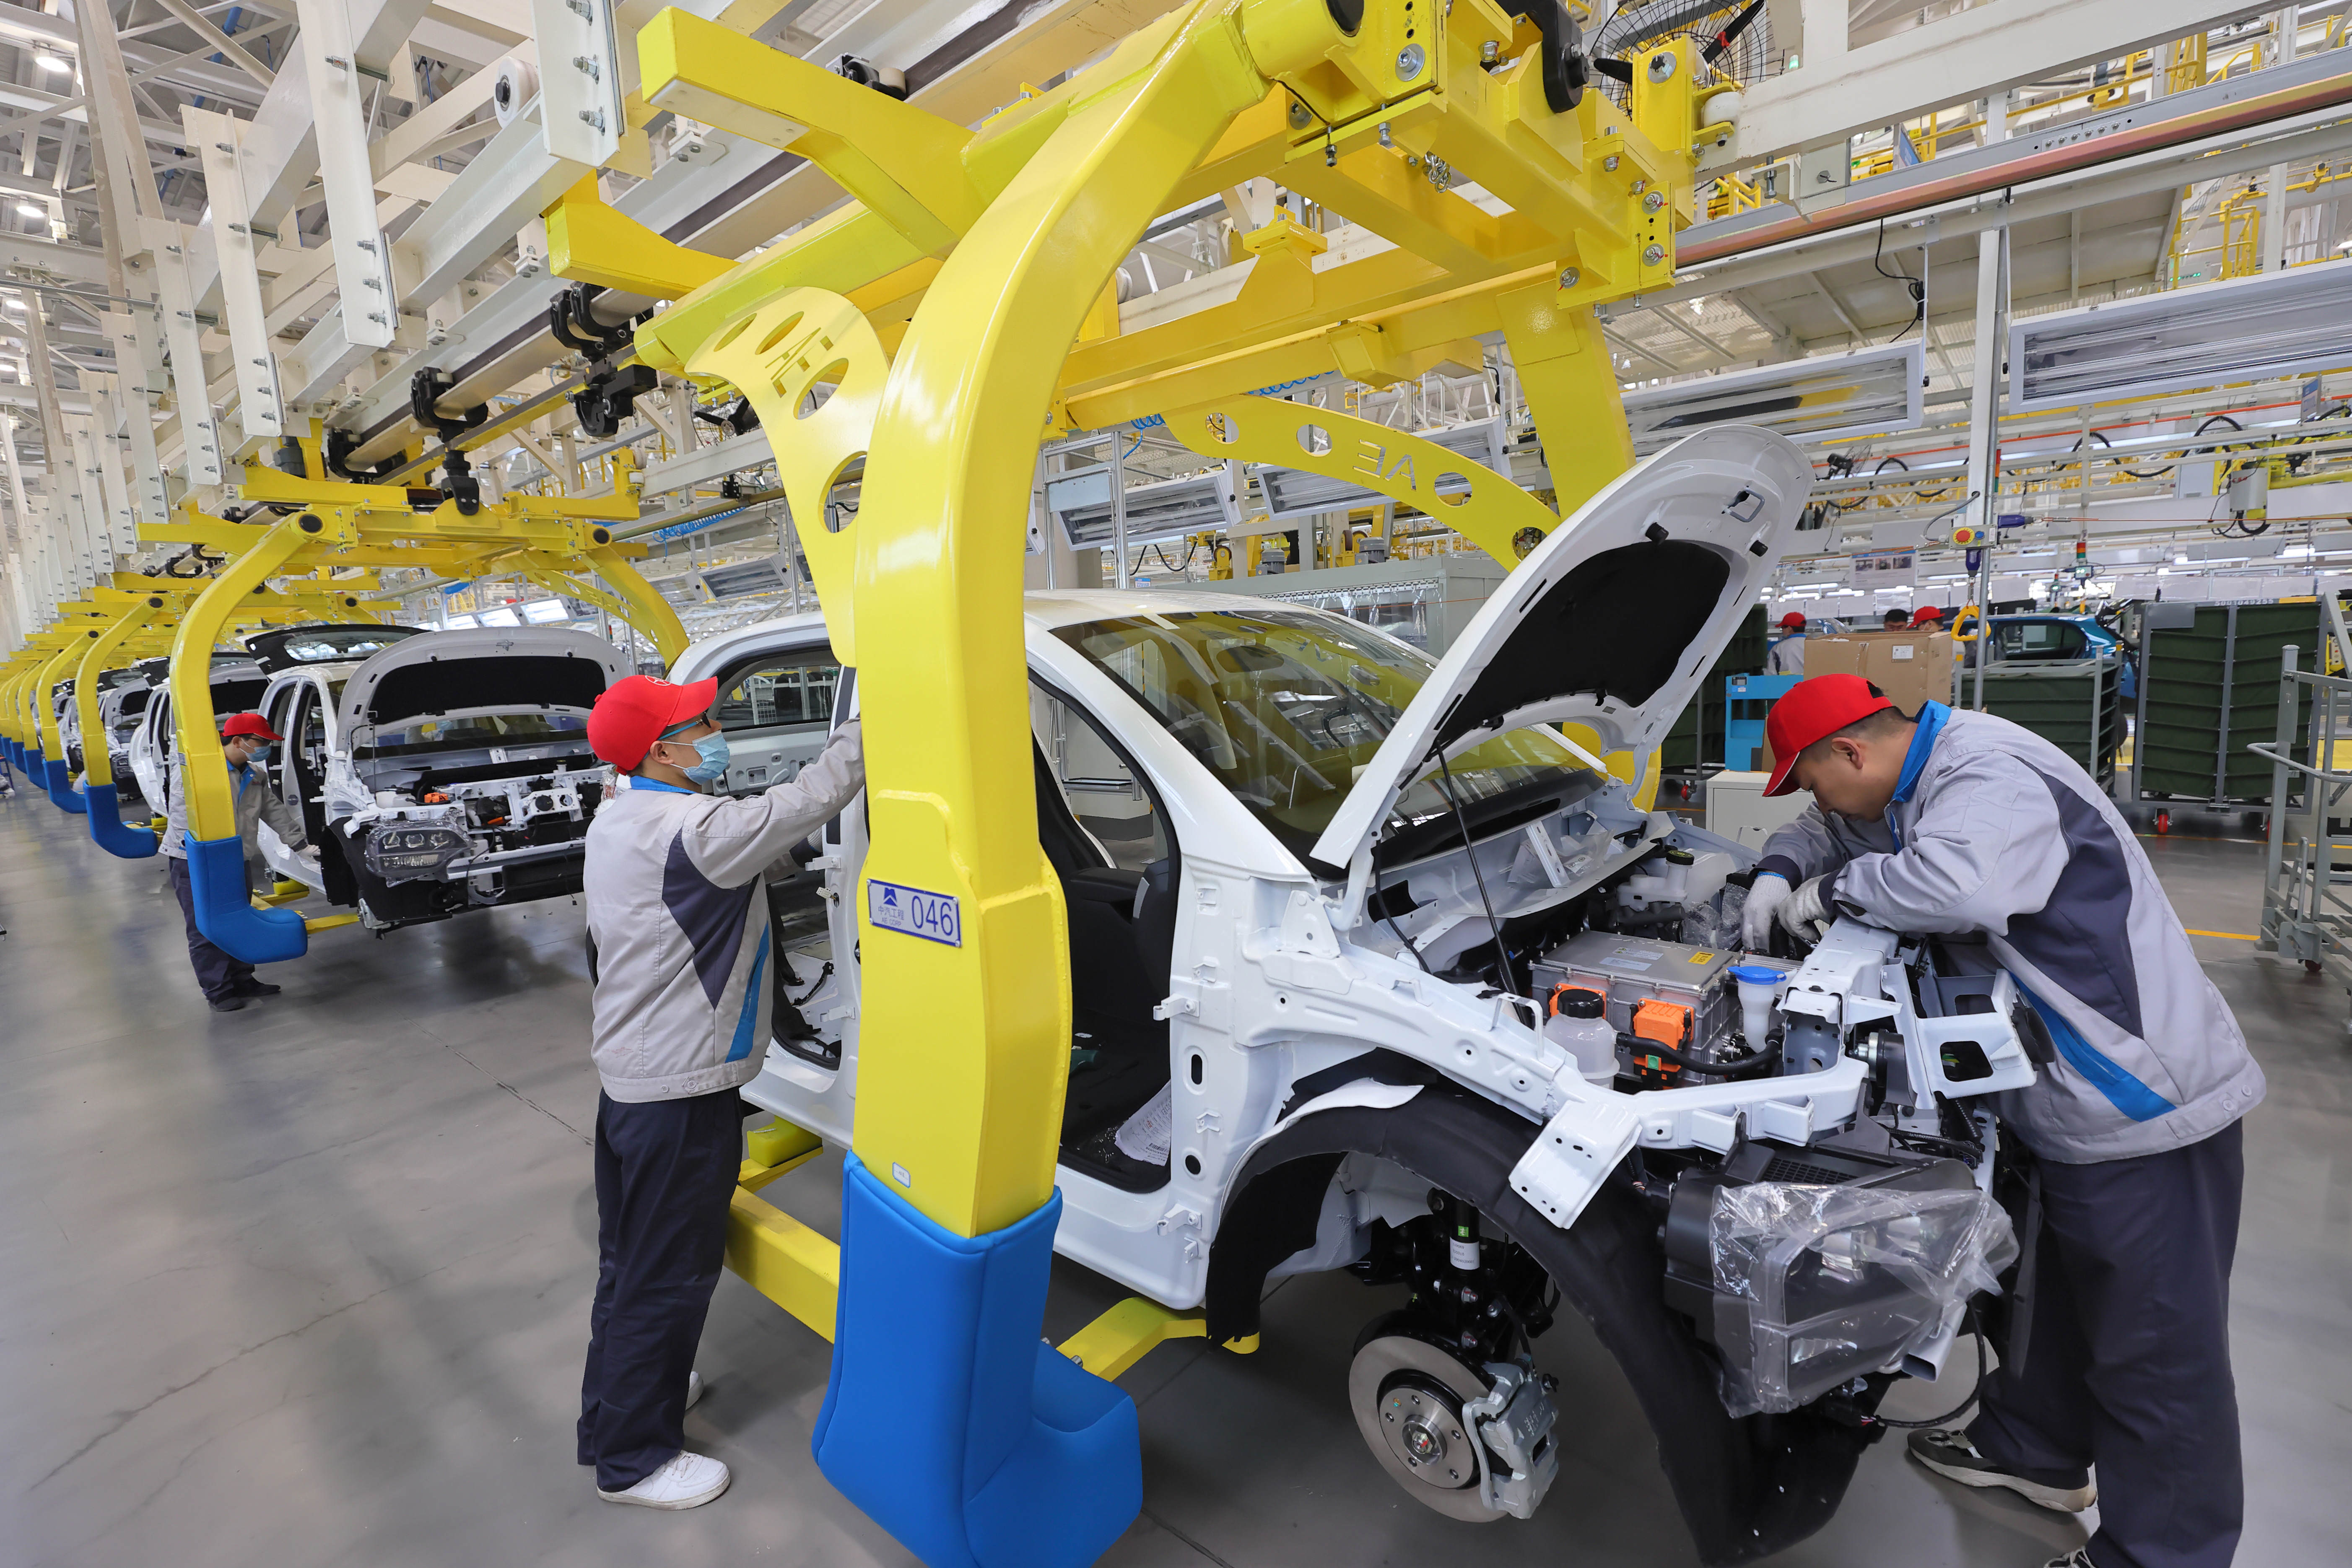 大运集团新能源汽车生产线正在组装纯电动汽车。闫鑫 摄